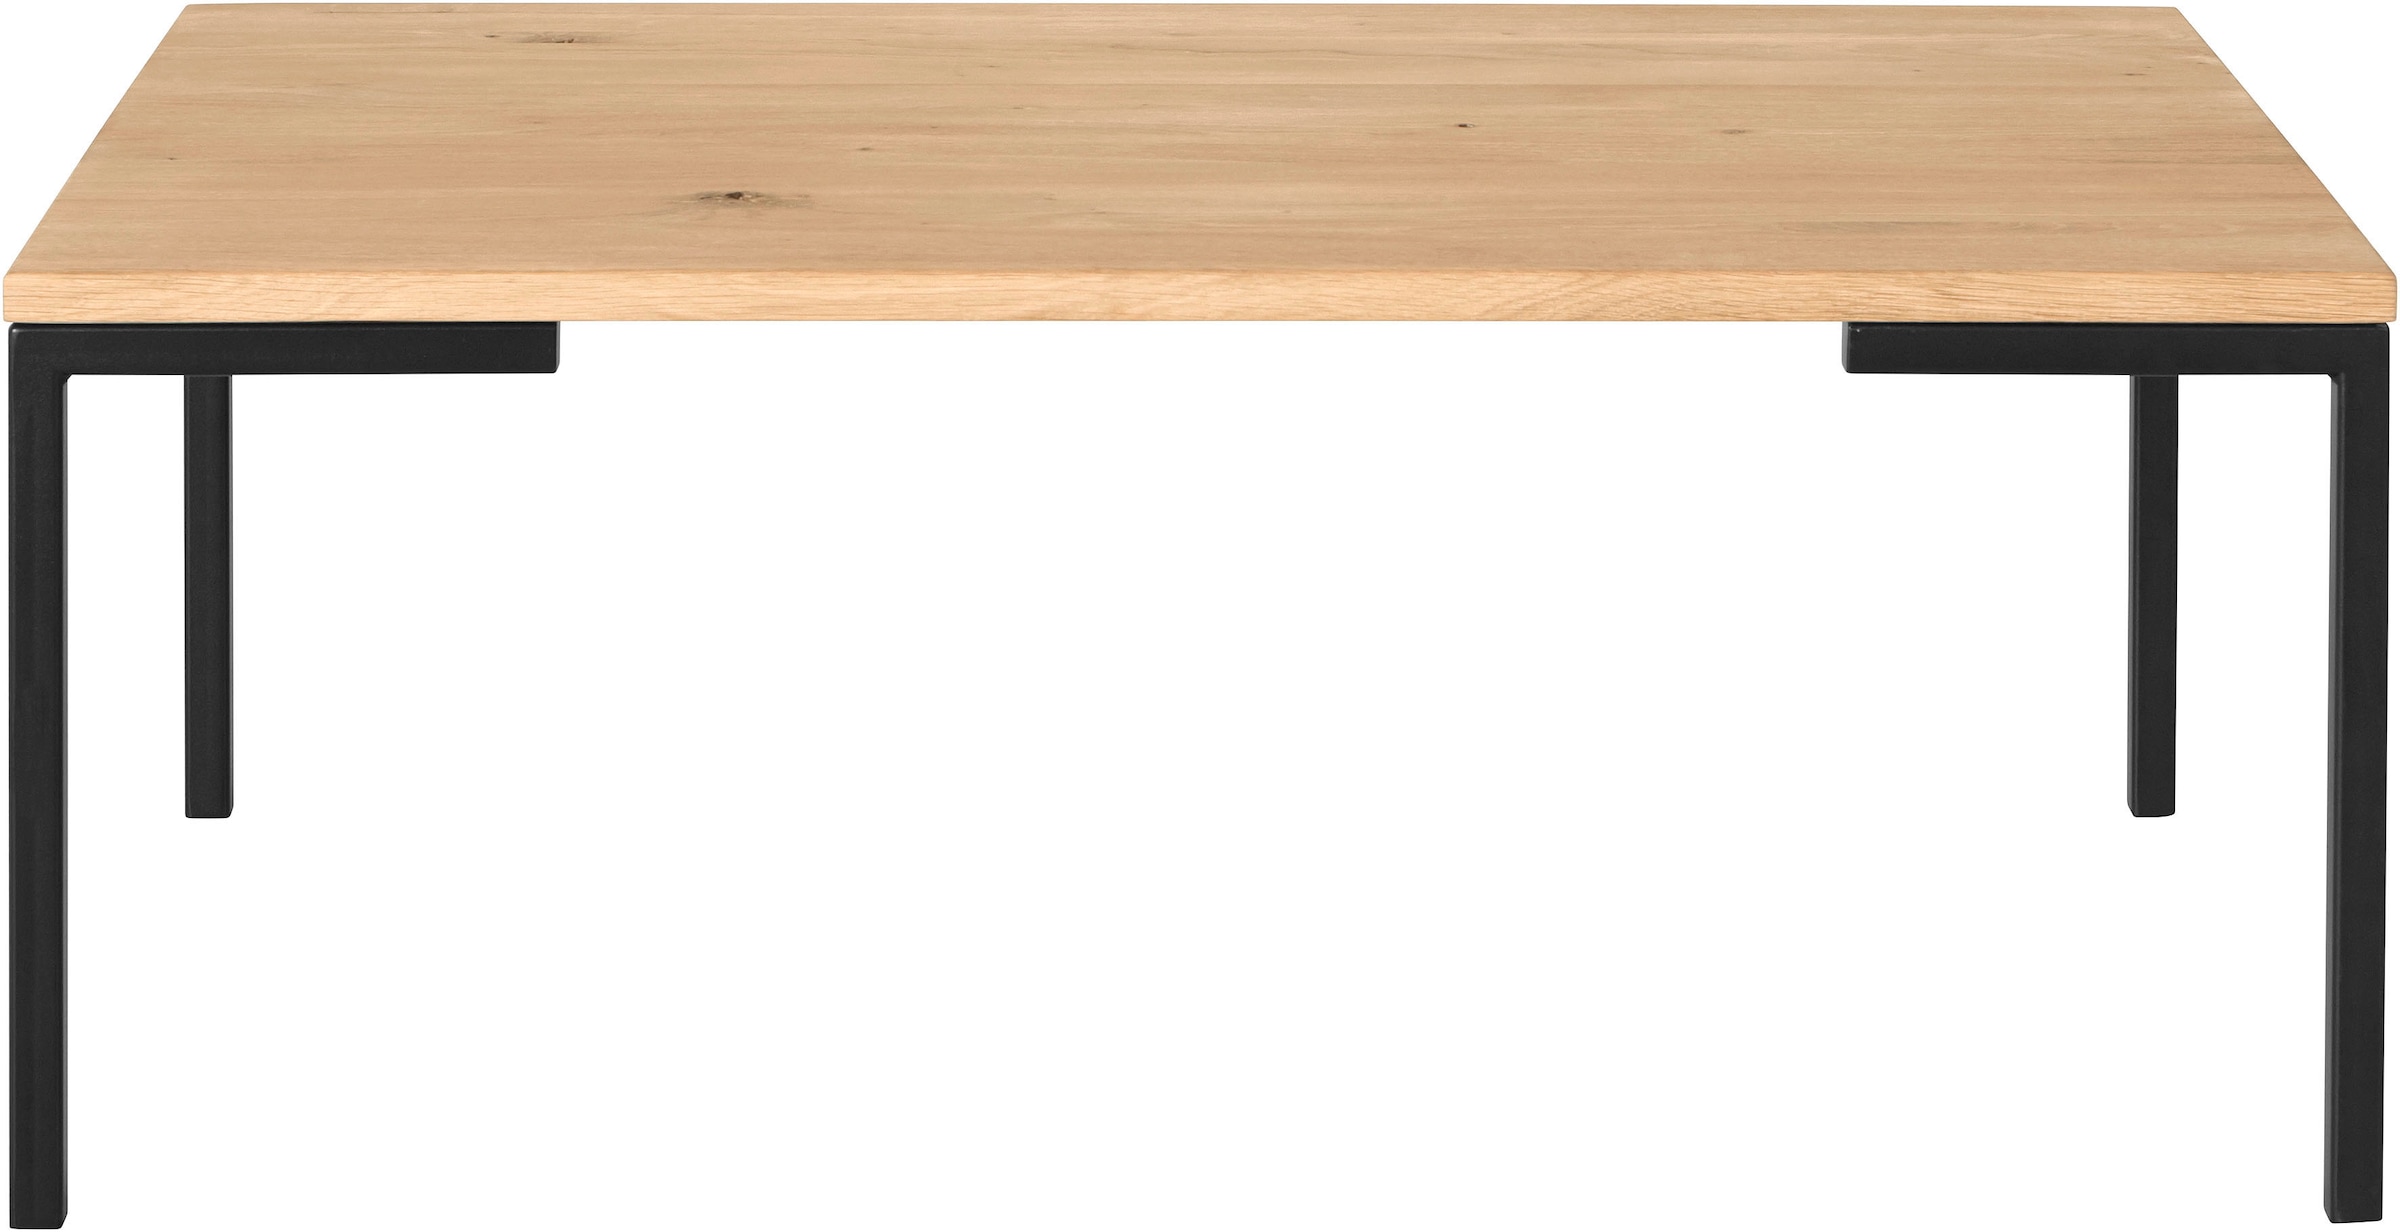 OTTO products Couchtisch »Lennard«, Wildeiche, rechteckige Tischplatte, mit schmalen Metallbeinen